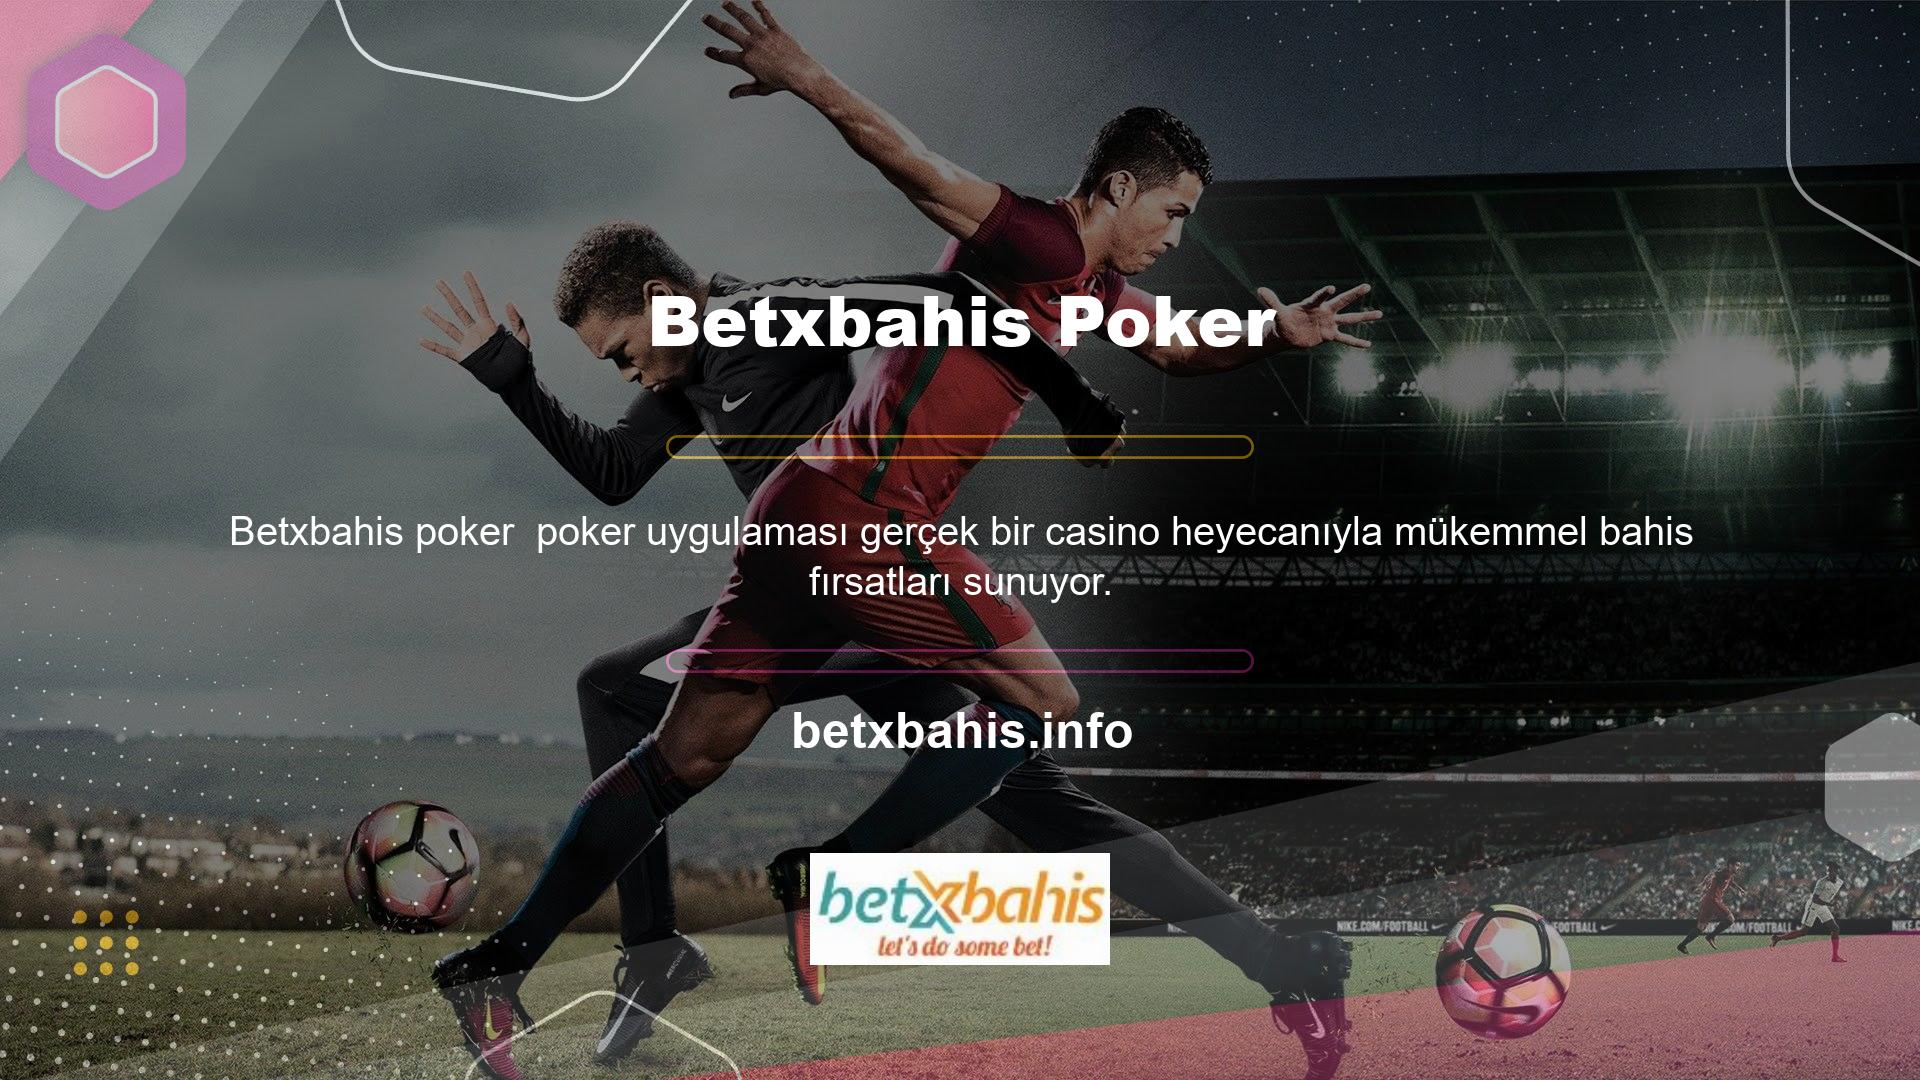 Betxbahis Poker Oyunları, takas için çok çeşitli poker oyunları sunar